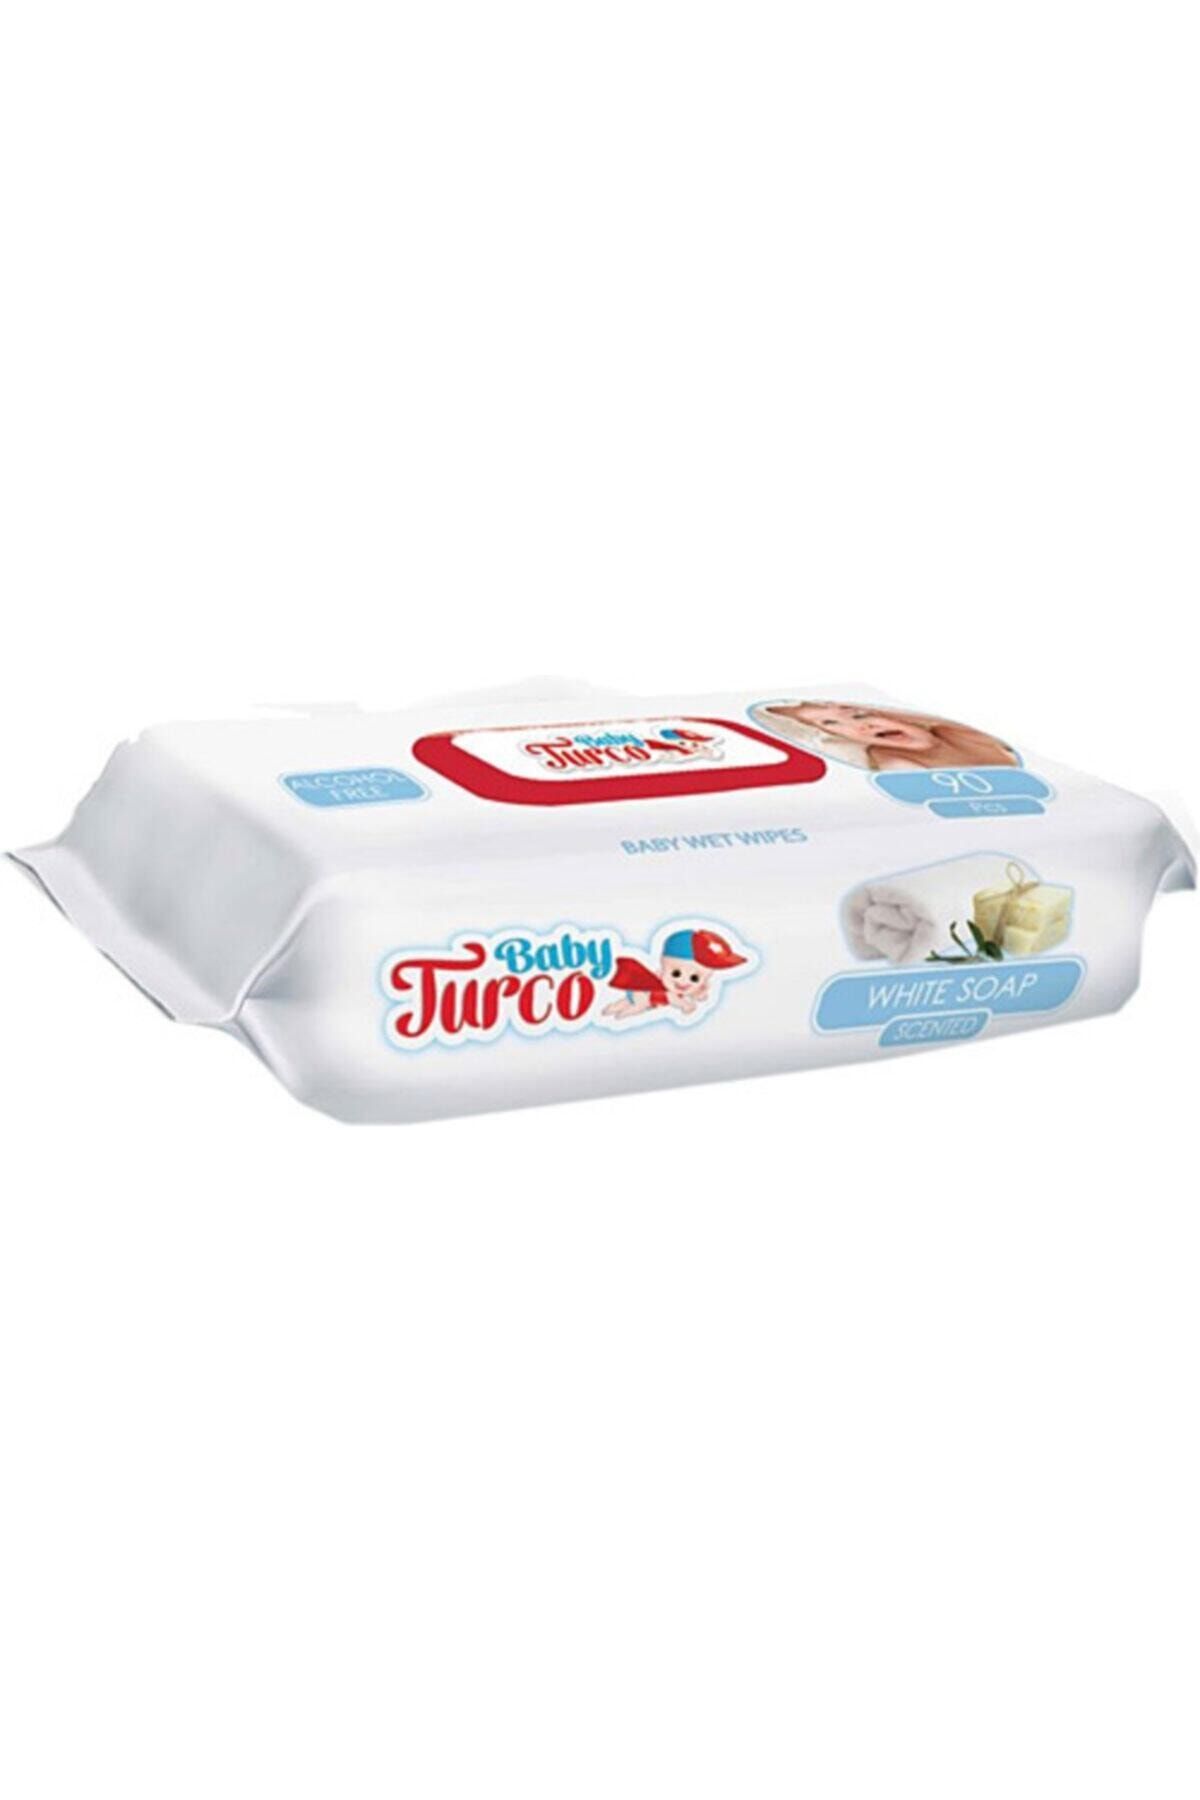 Baby Turco Beyaz Sabun Kokulu Islak Mendil Tekli Paket 90 Yaprak